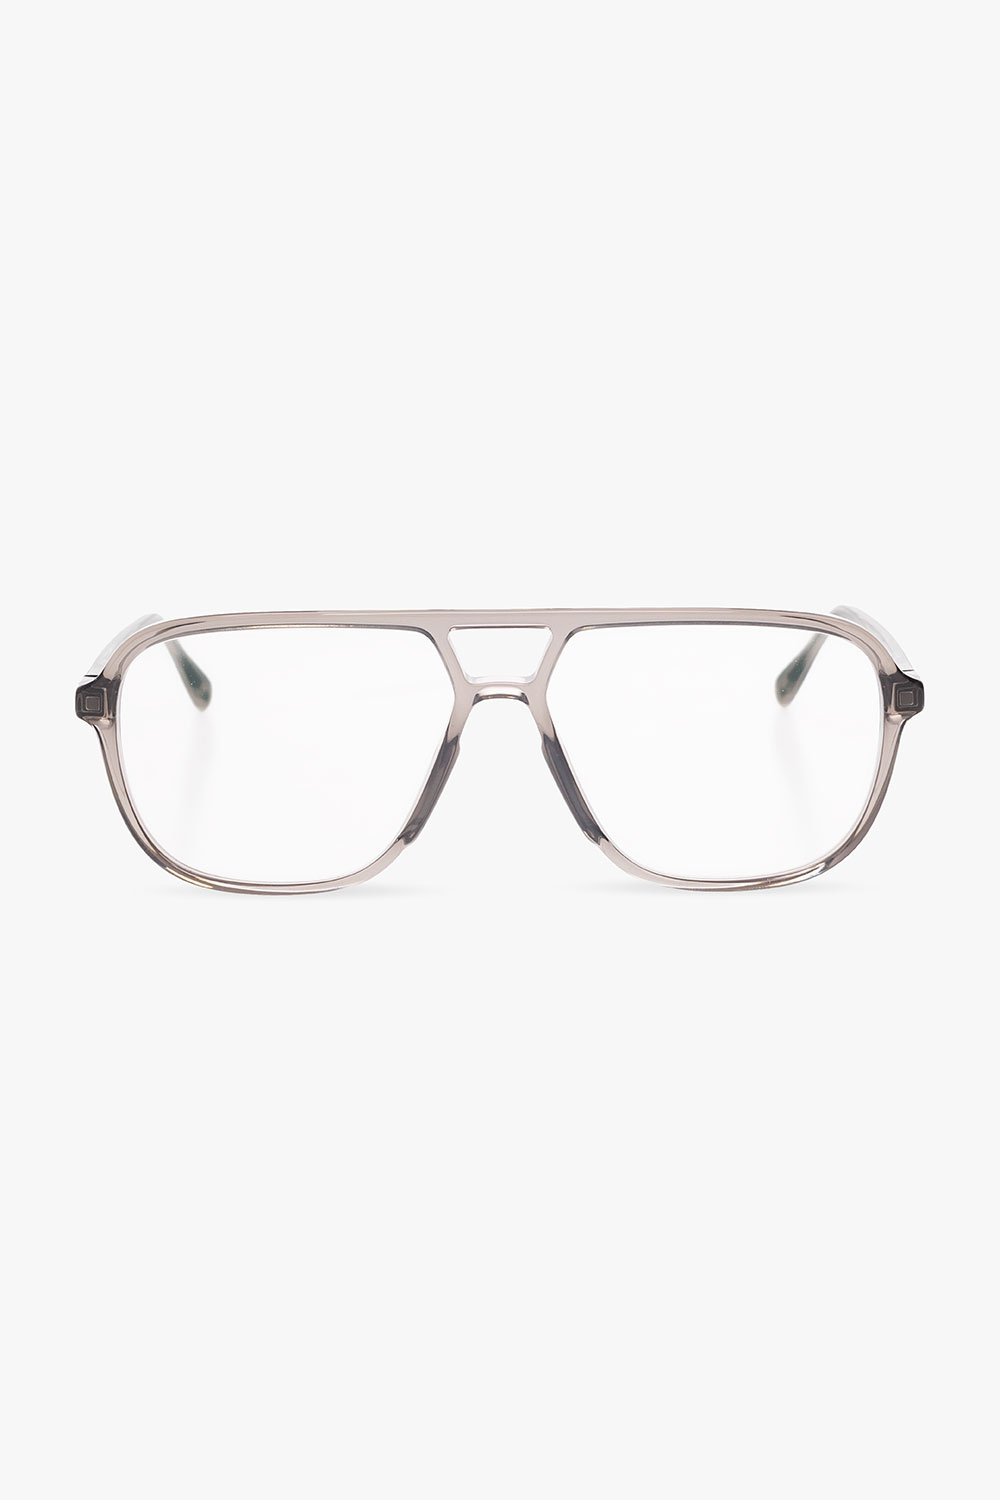 Mykita ‘Kami C162’ optical glasses